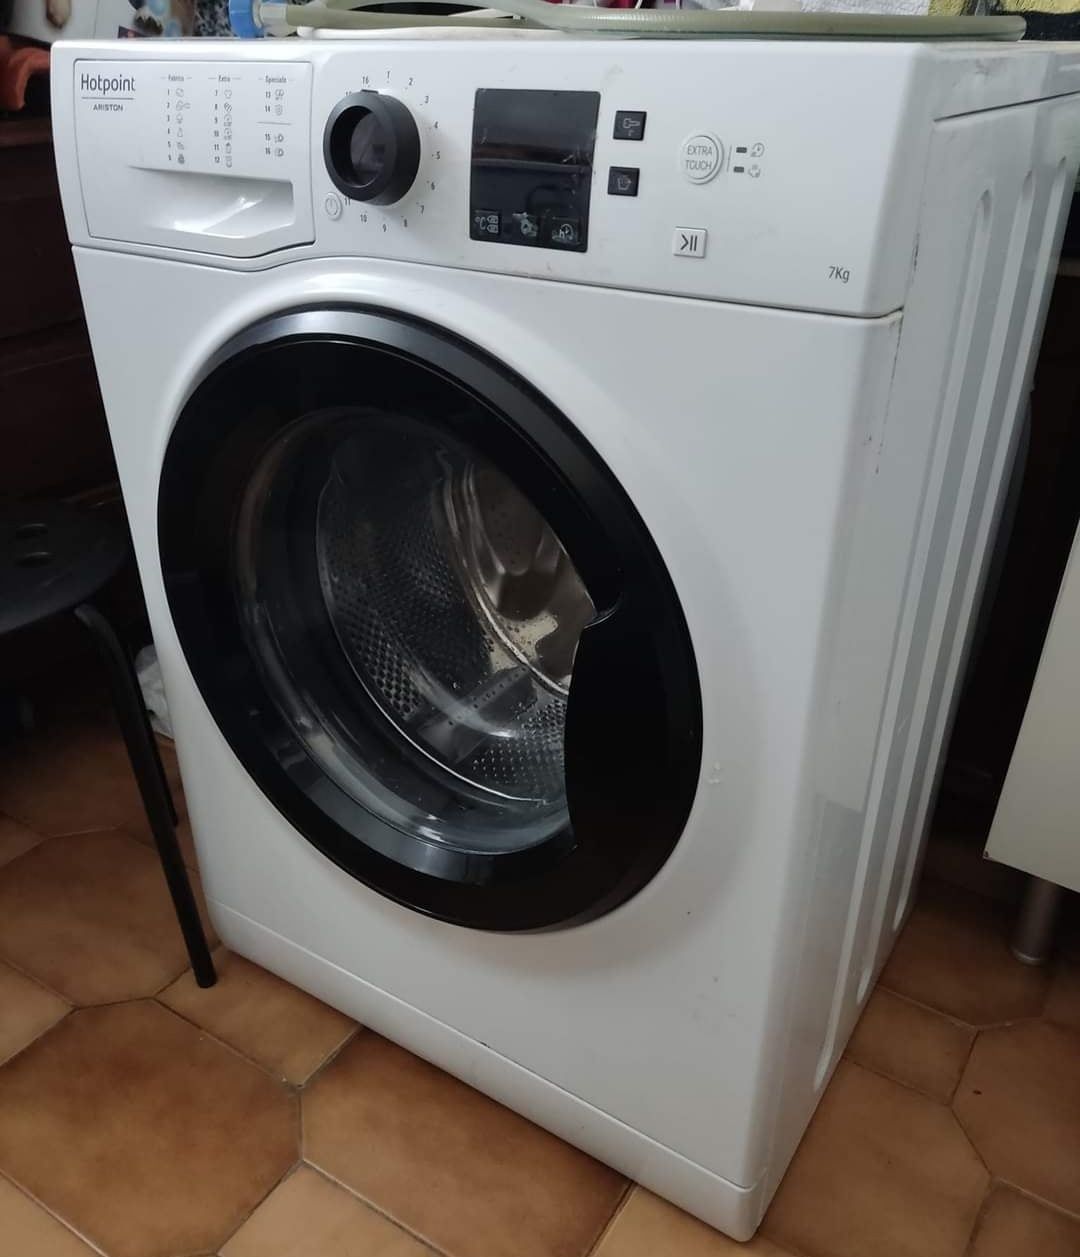 Máquina de lavar roupa - Hotpoint Ariston
Marca Hotpoint Ariston 
Capa